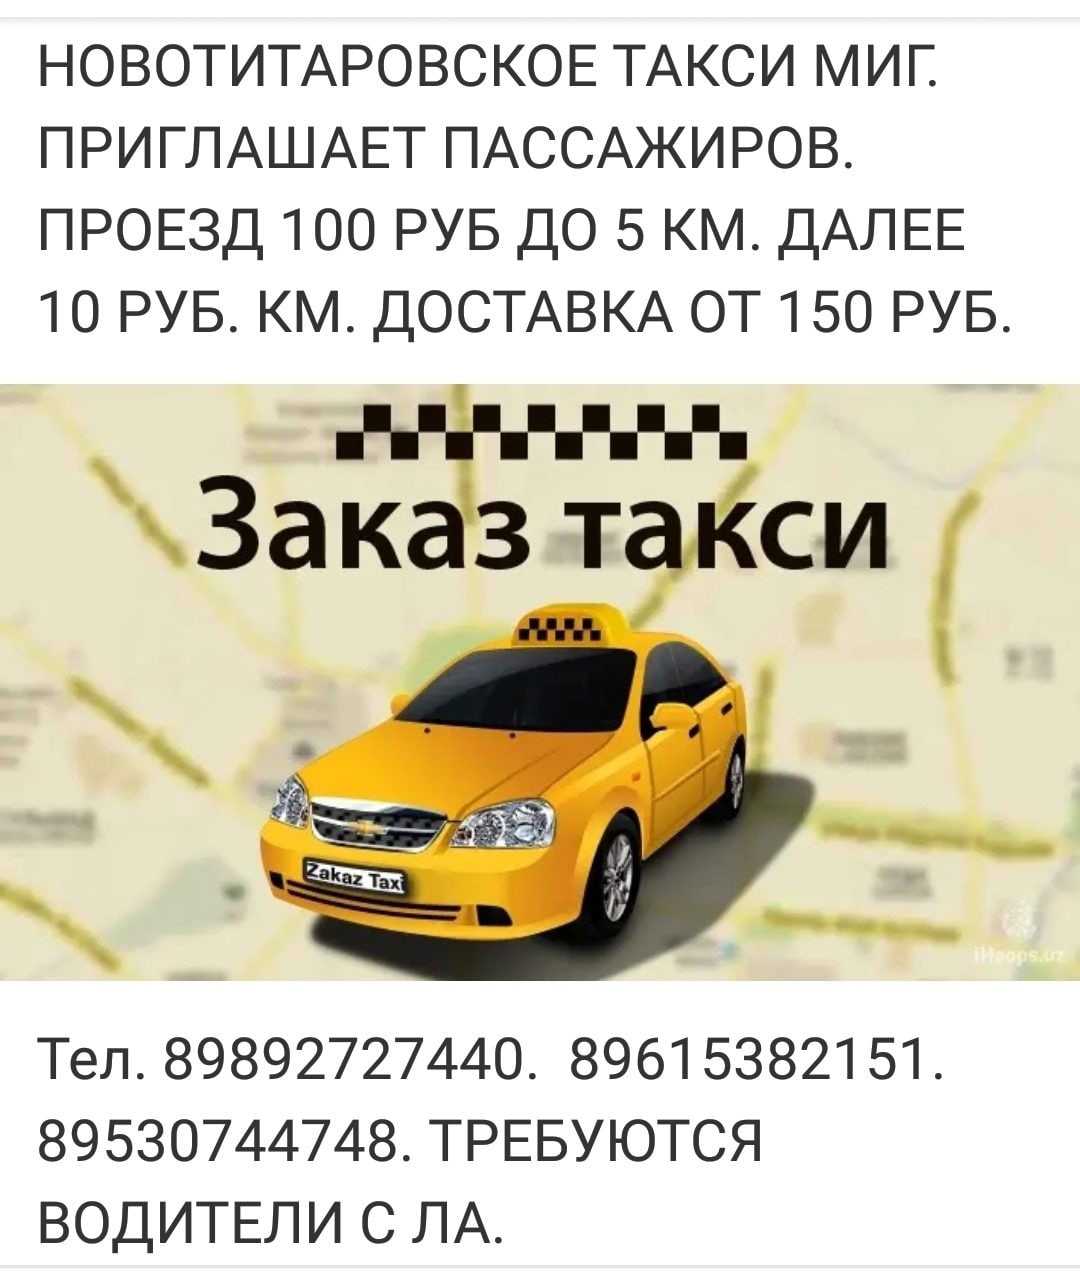 Грозненское такси телефон. Закажи такси. Такси Динская. Такси Новотитаровская. Такси миг.